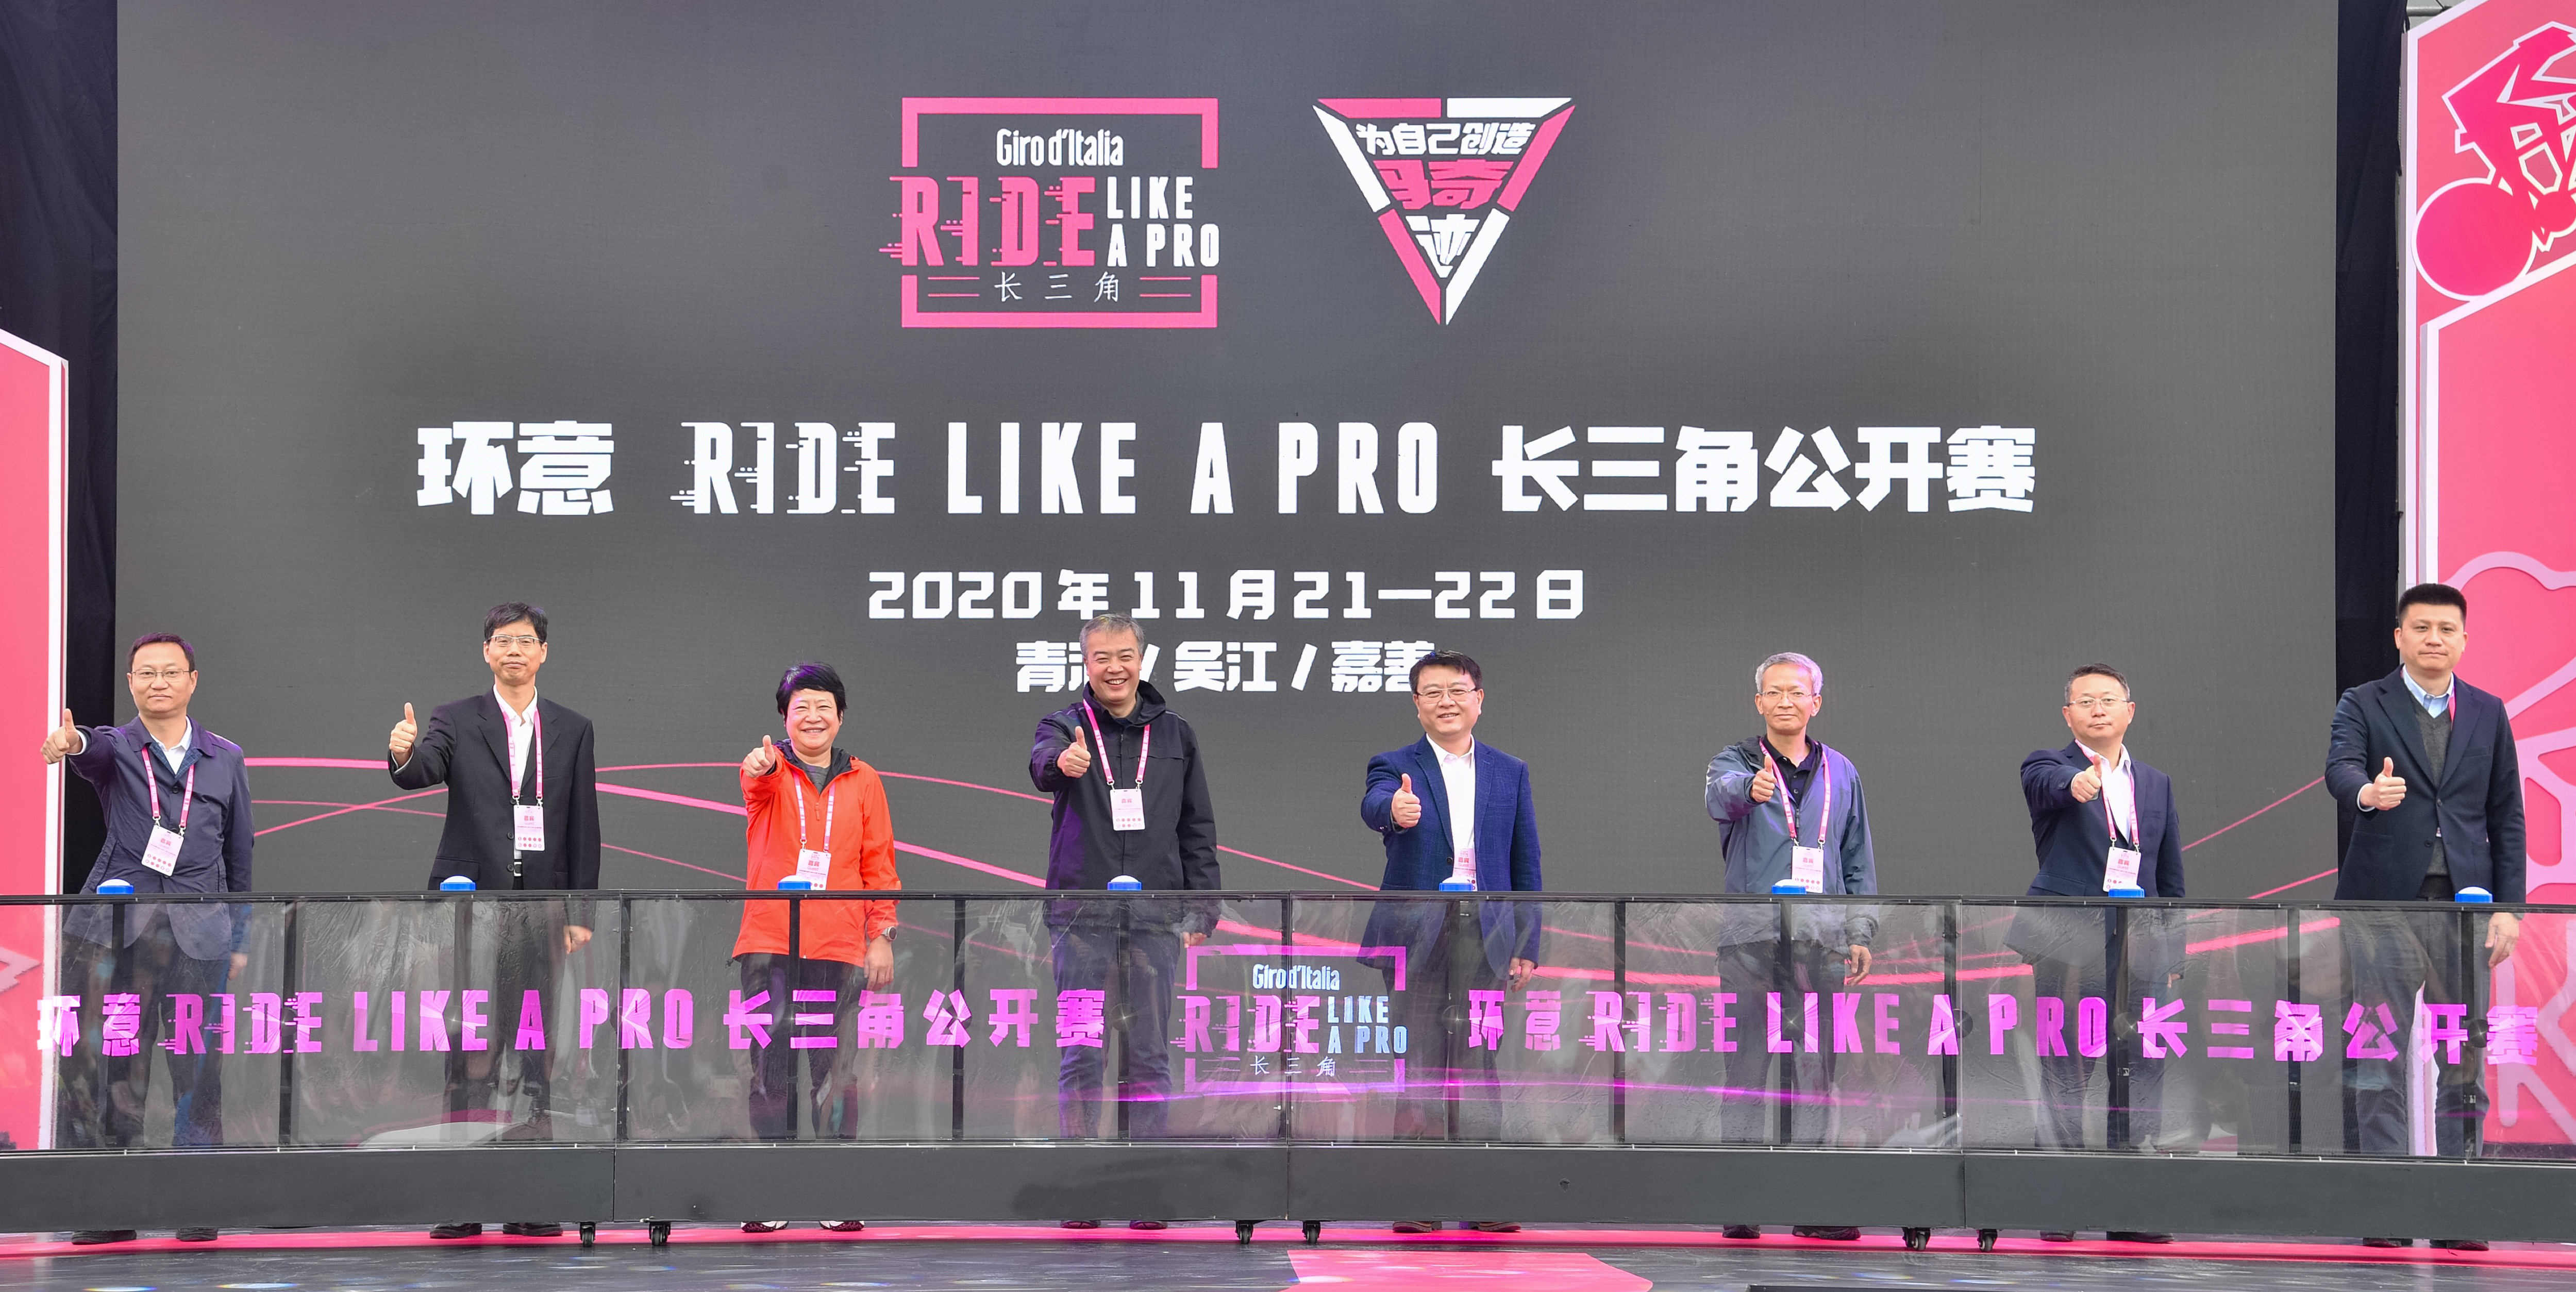 2020 Giro d’Italia Ride Like A Pro Yangtze River Delta Open